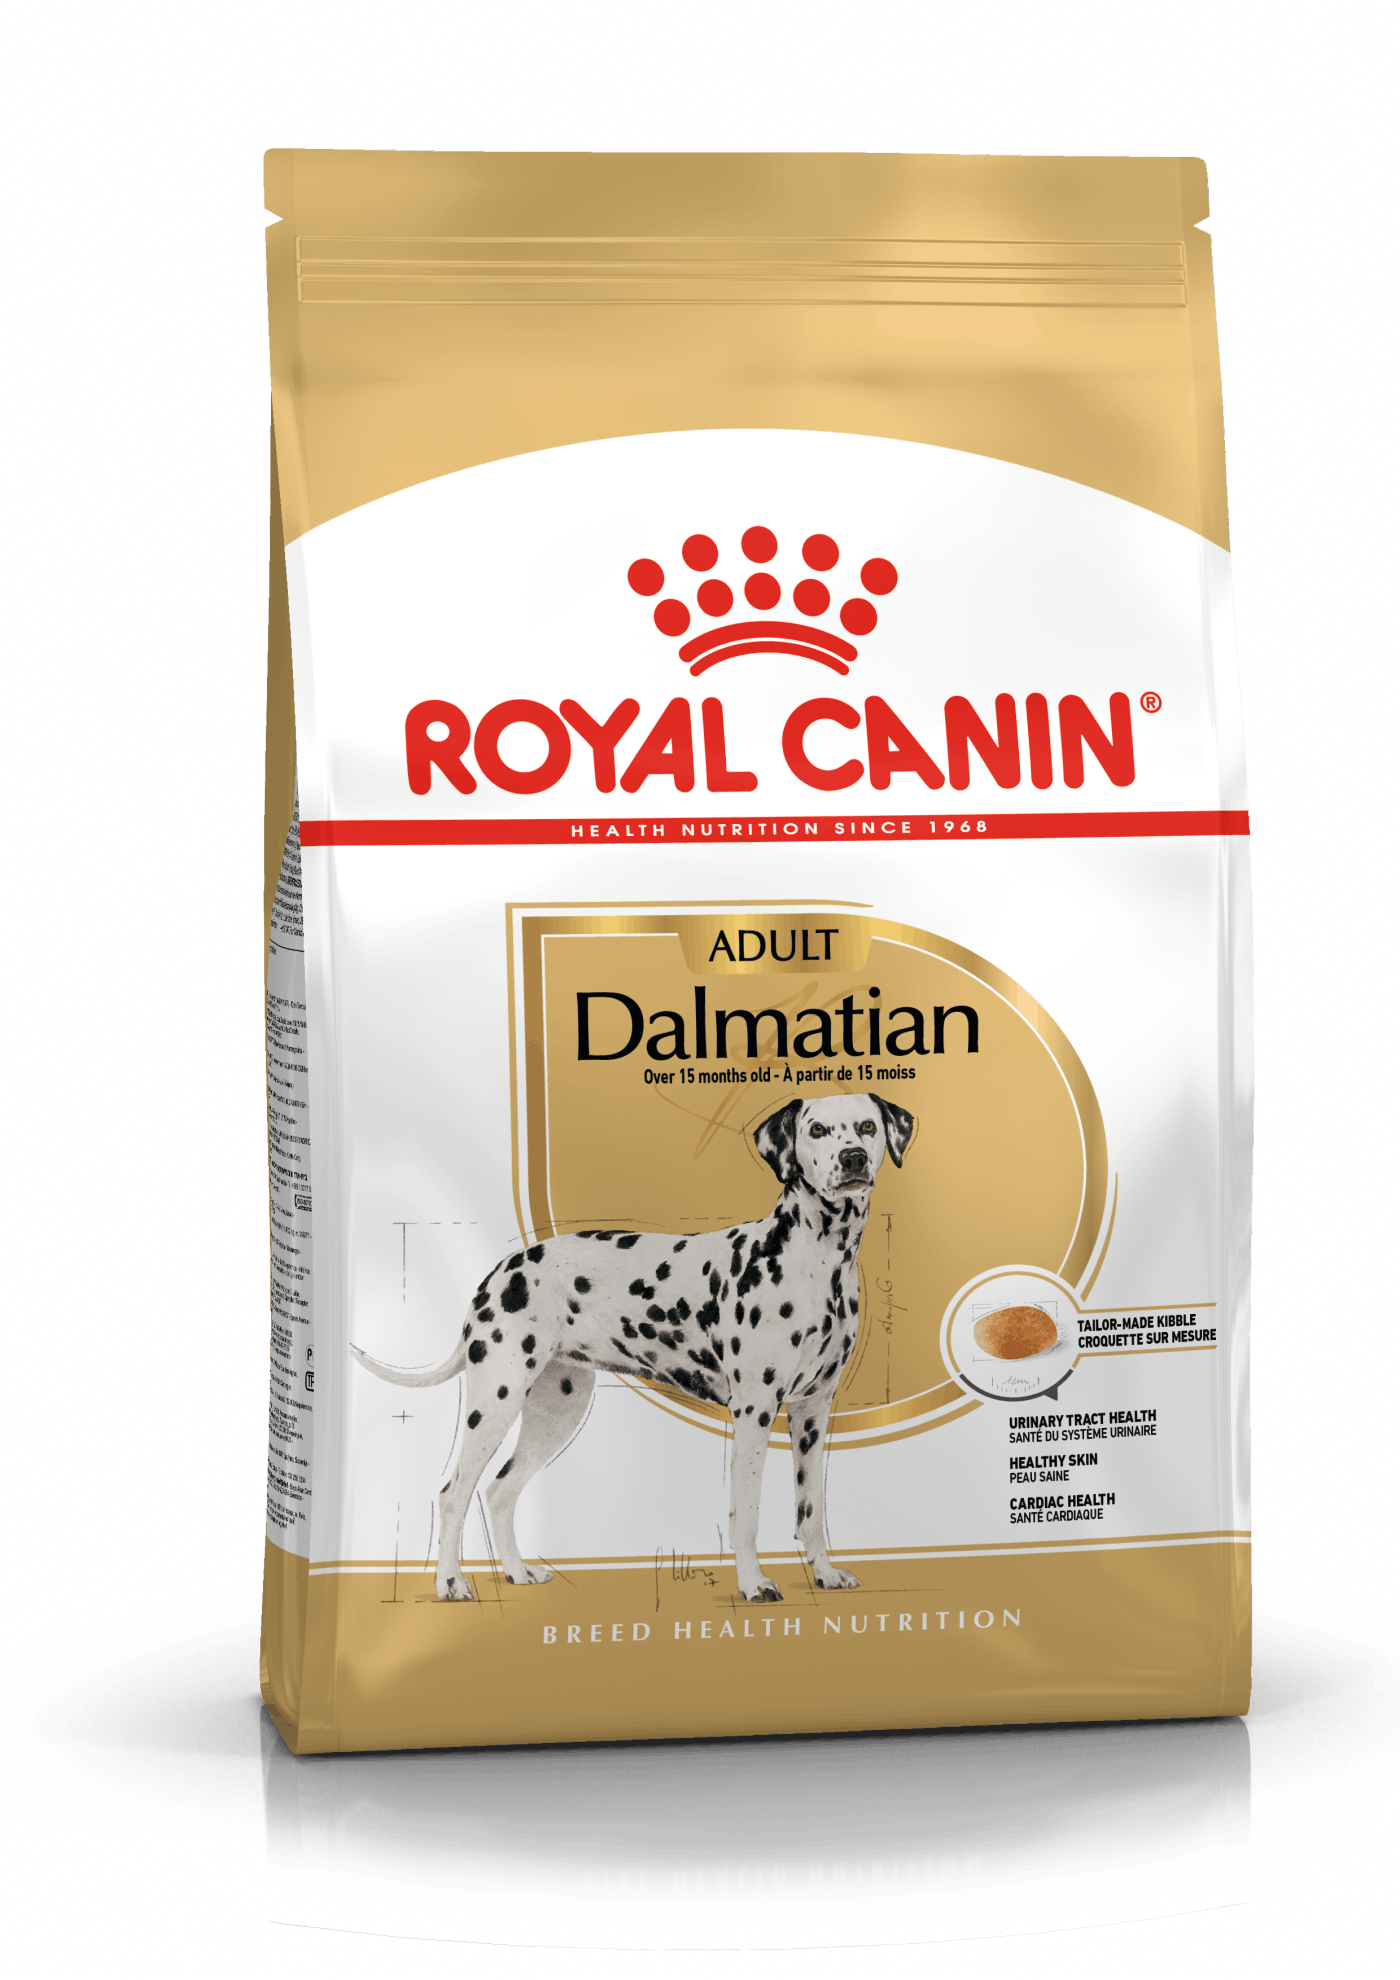 Billede af Royal Canin Dalmatiner Adult (12kg).